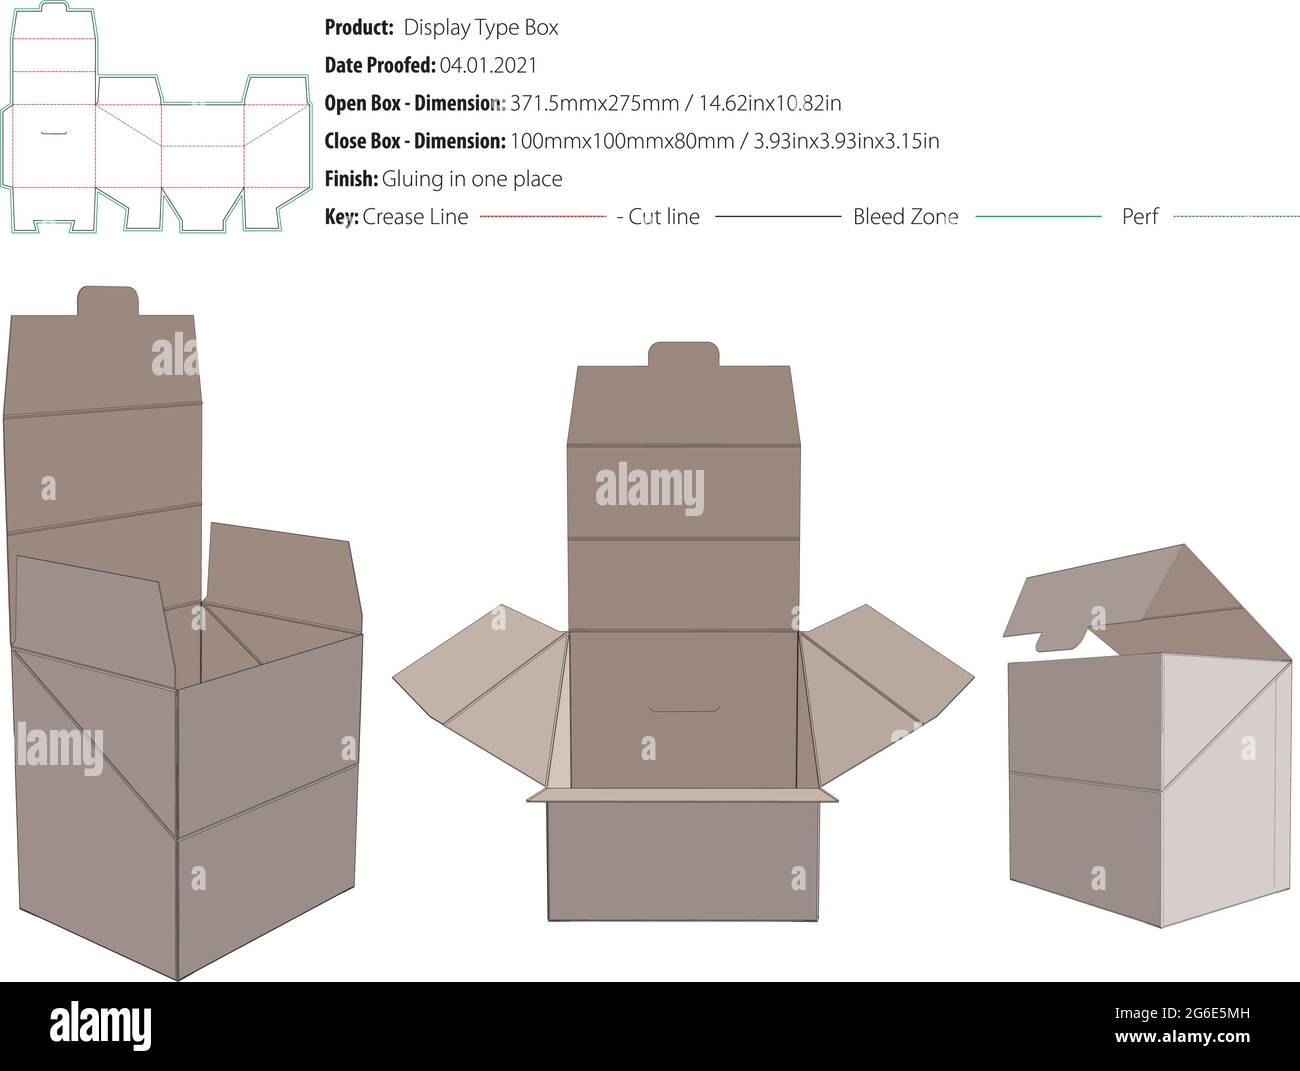 Display-Typ-Box Verpackung Design-Vorlage mit Perforation und Verriegelung kleben an einem Ort Schnappverschluss Stanzform geschnitten - Vektor Stock Vektor